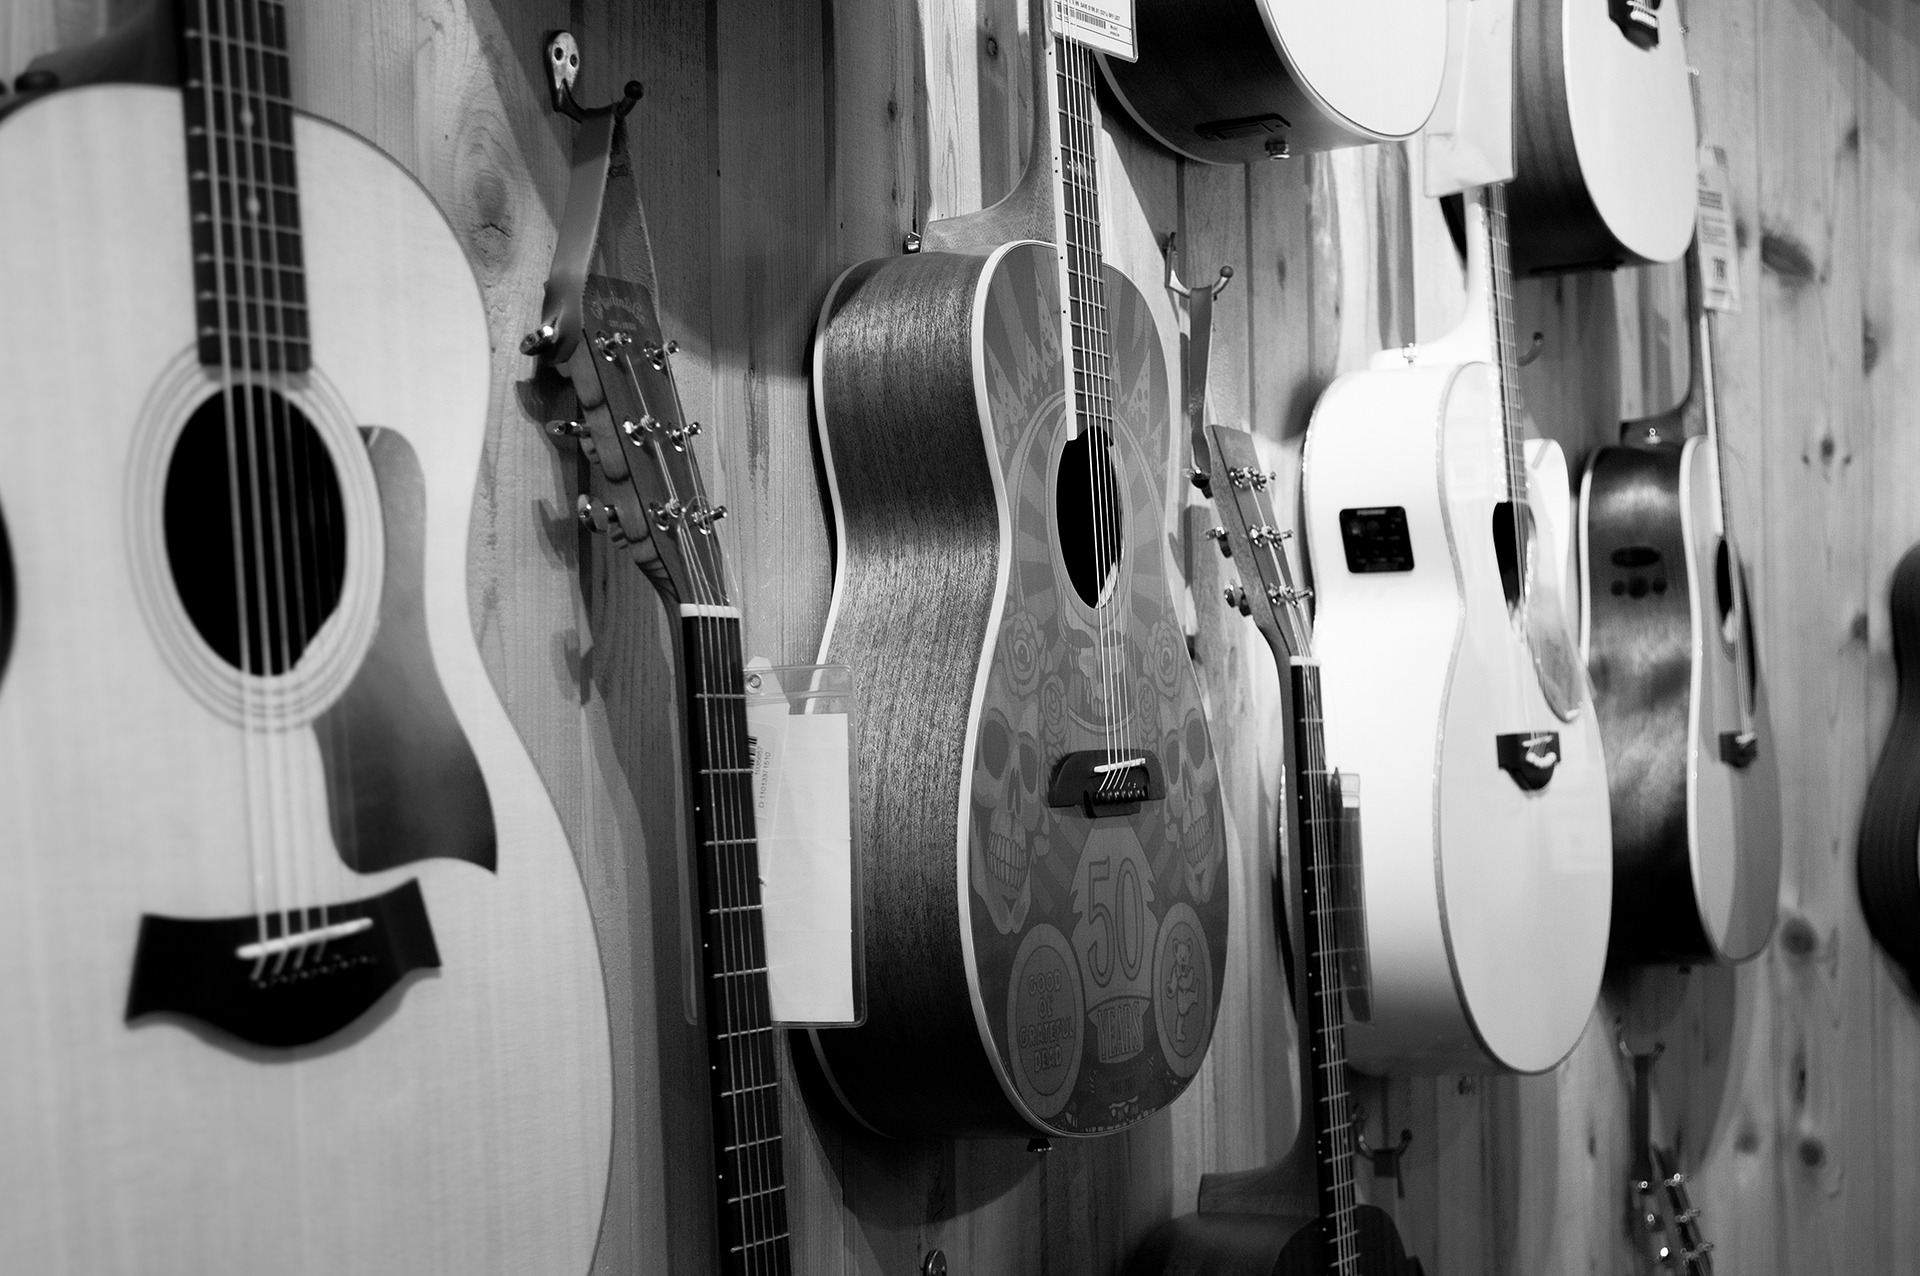 アコースティックギター有名メーカーとミュージシャン使用ギター